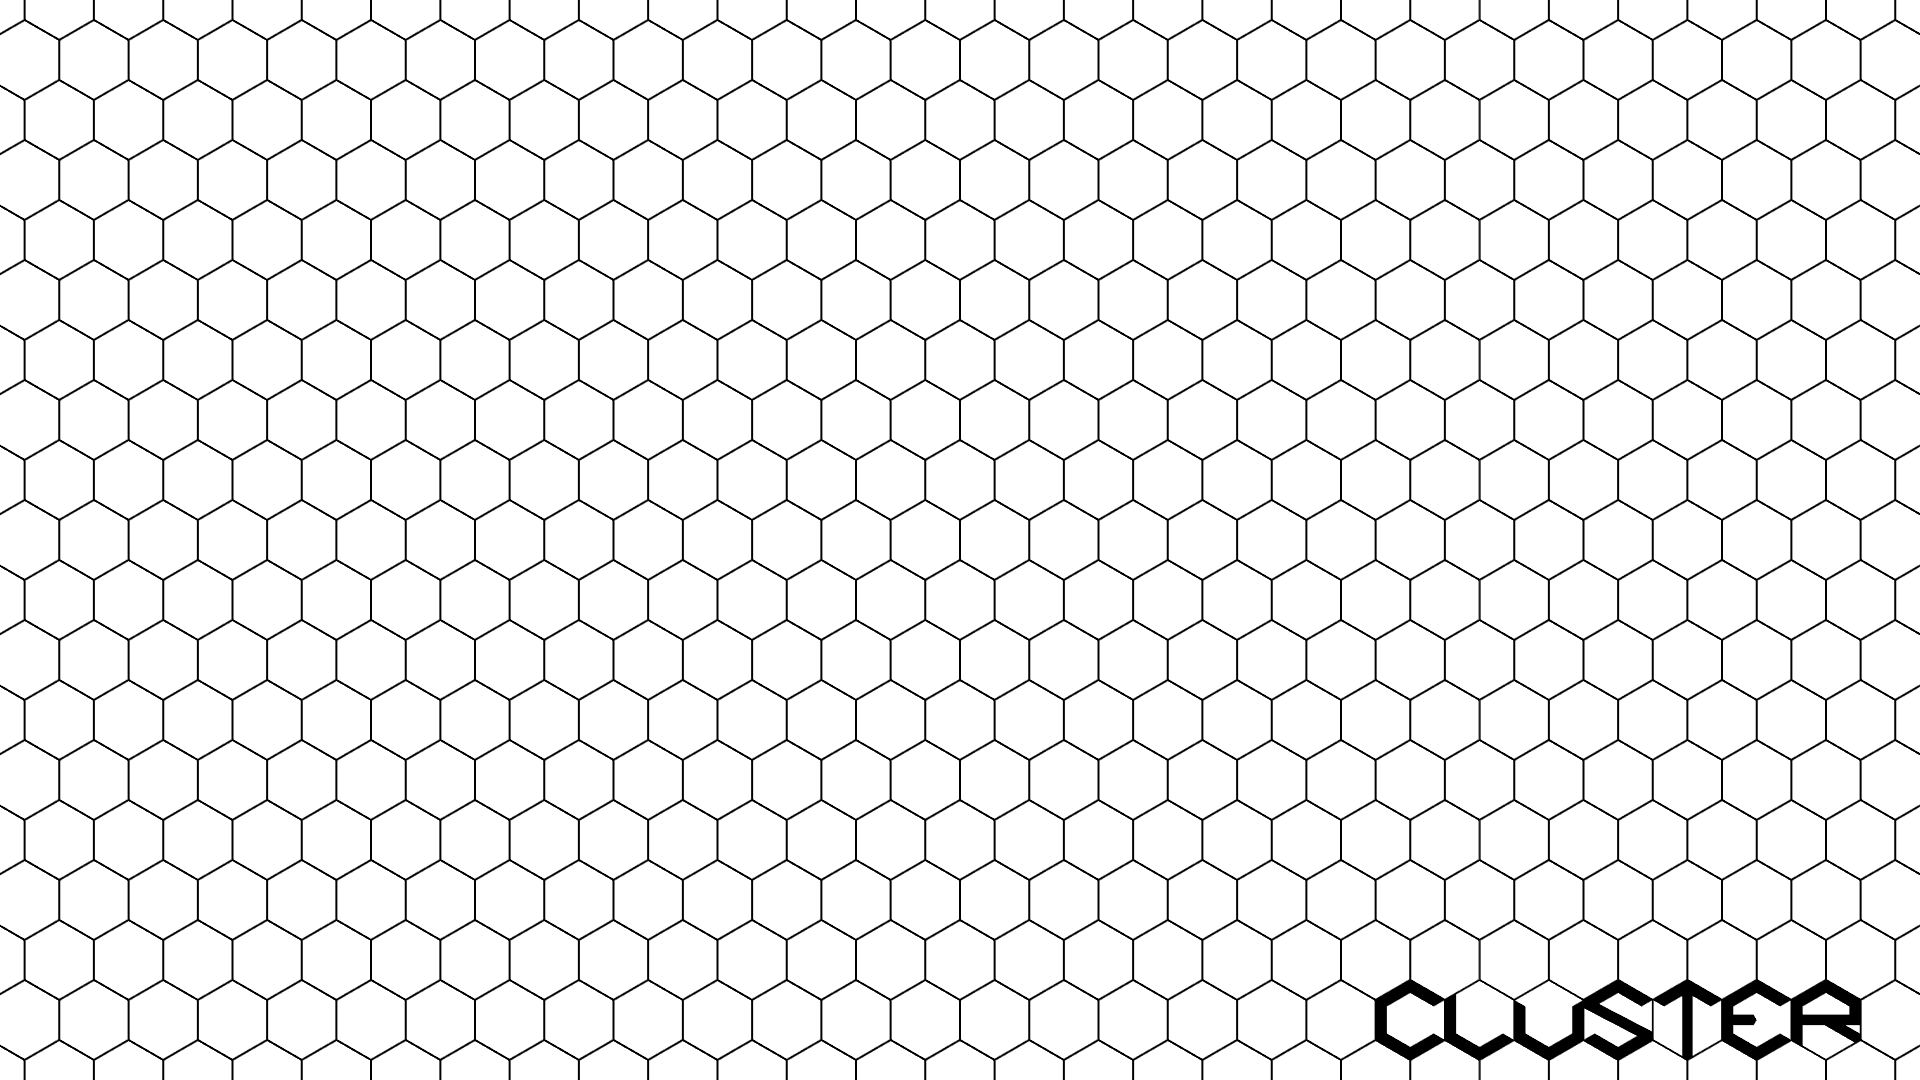 Clean hexagonal grid image